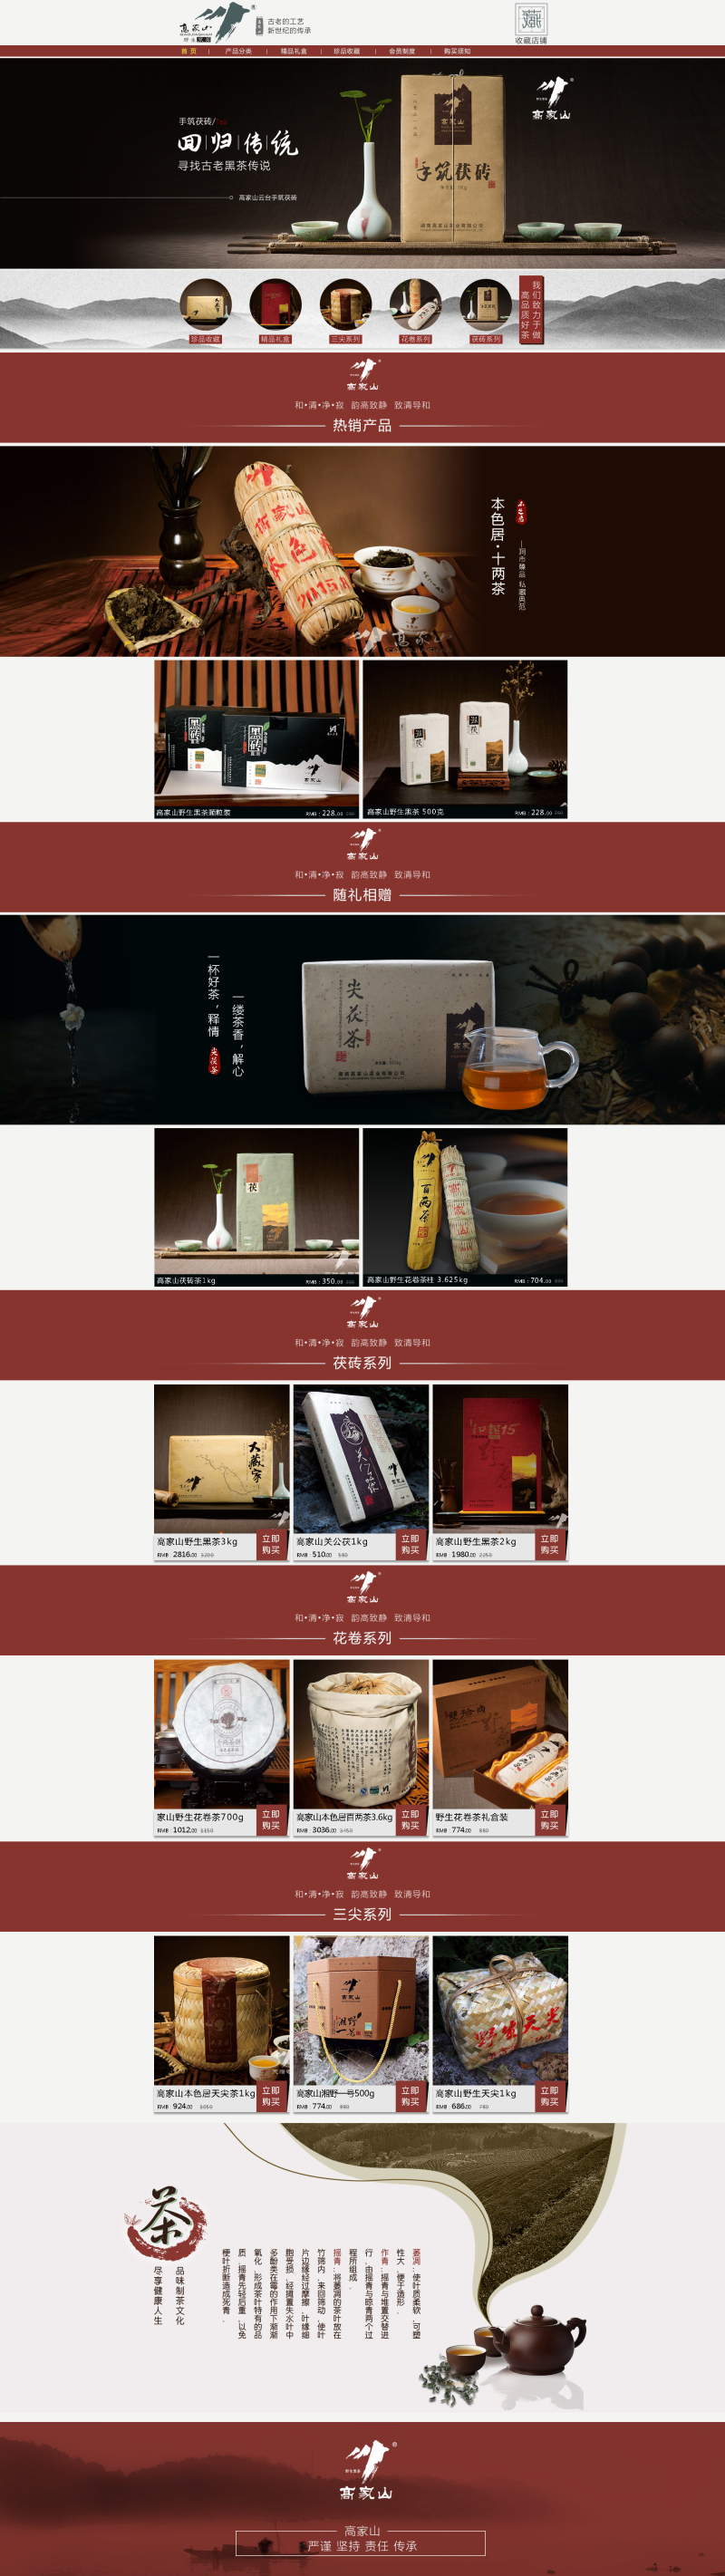 简约中国风茶叶产品店铺首页PSD模版